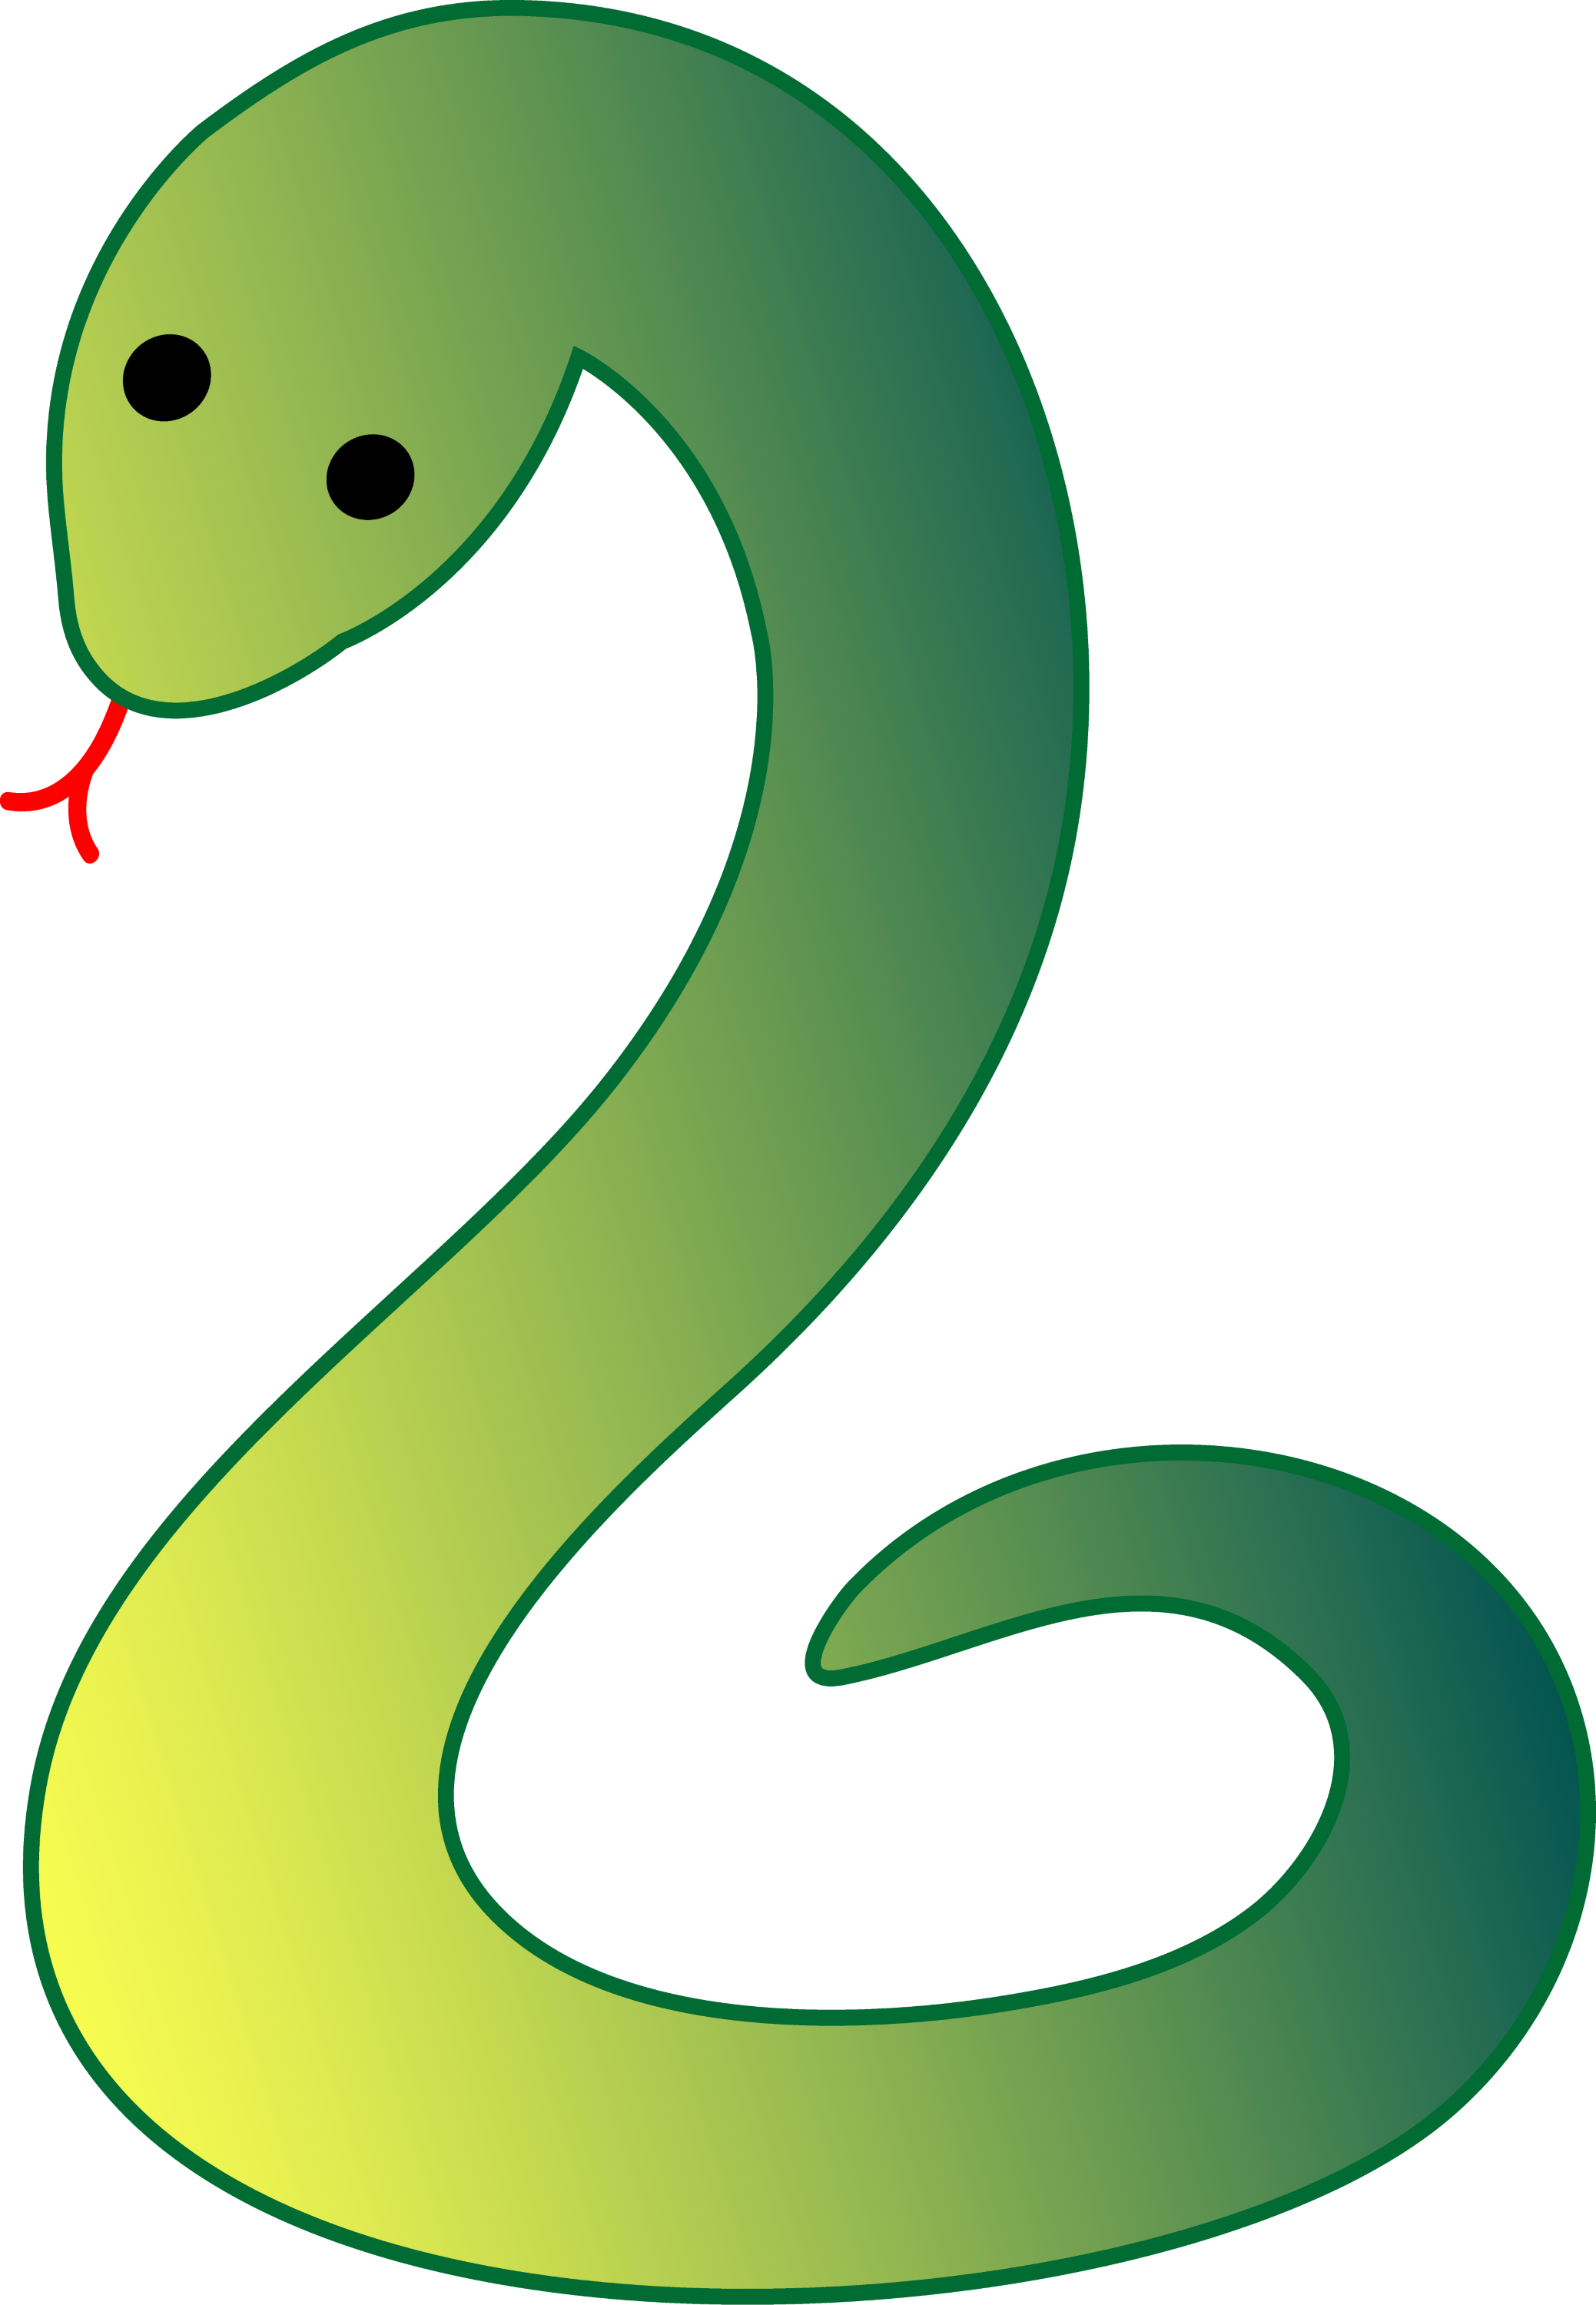 free clipart cartoon snakes - photo #41